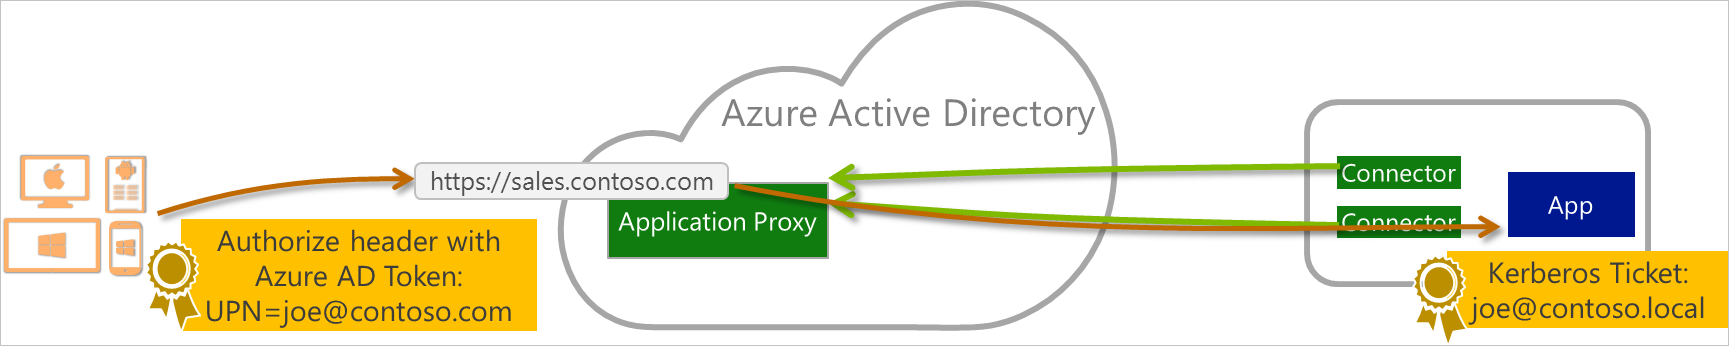 Relação entre os usuários finais, o Azure Active Directory e os aplicativos publicados